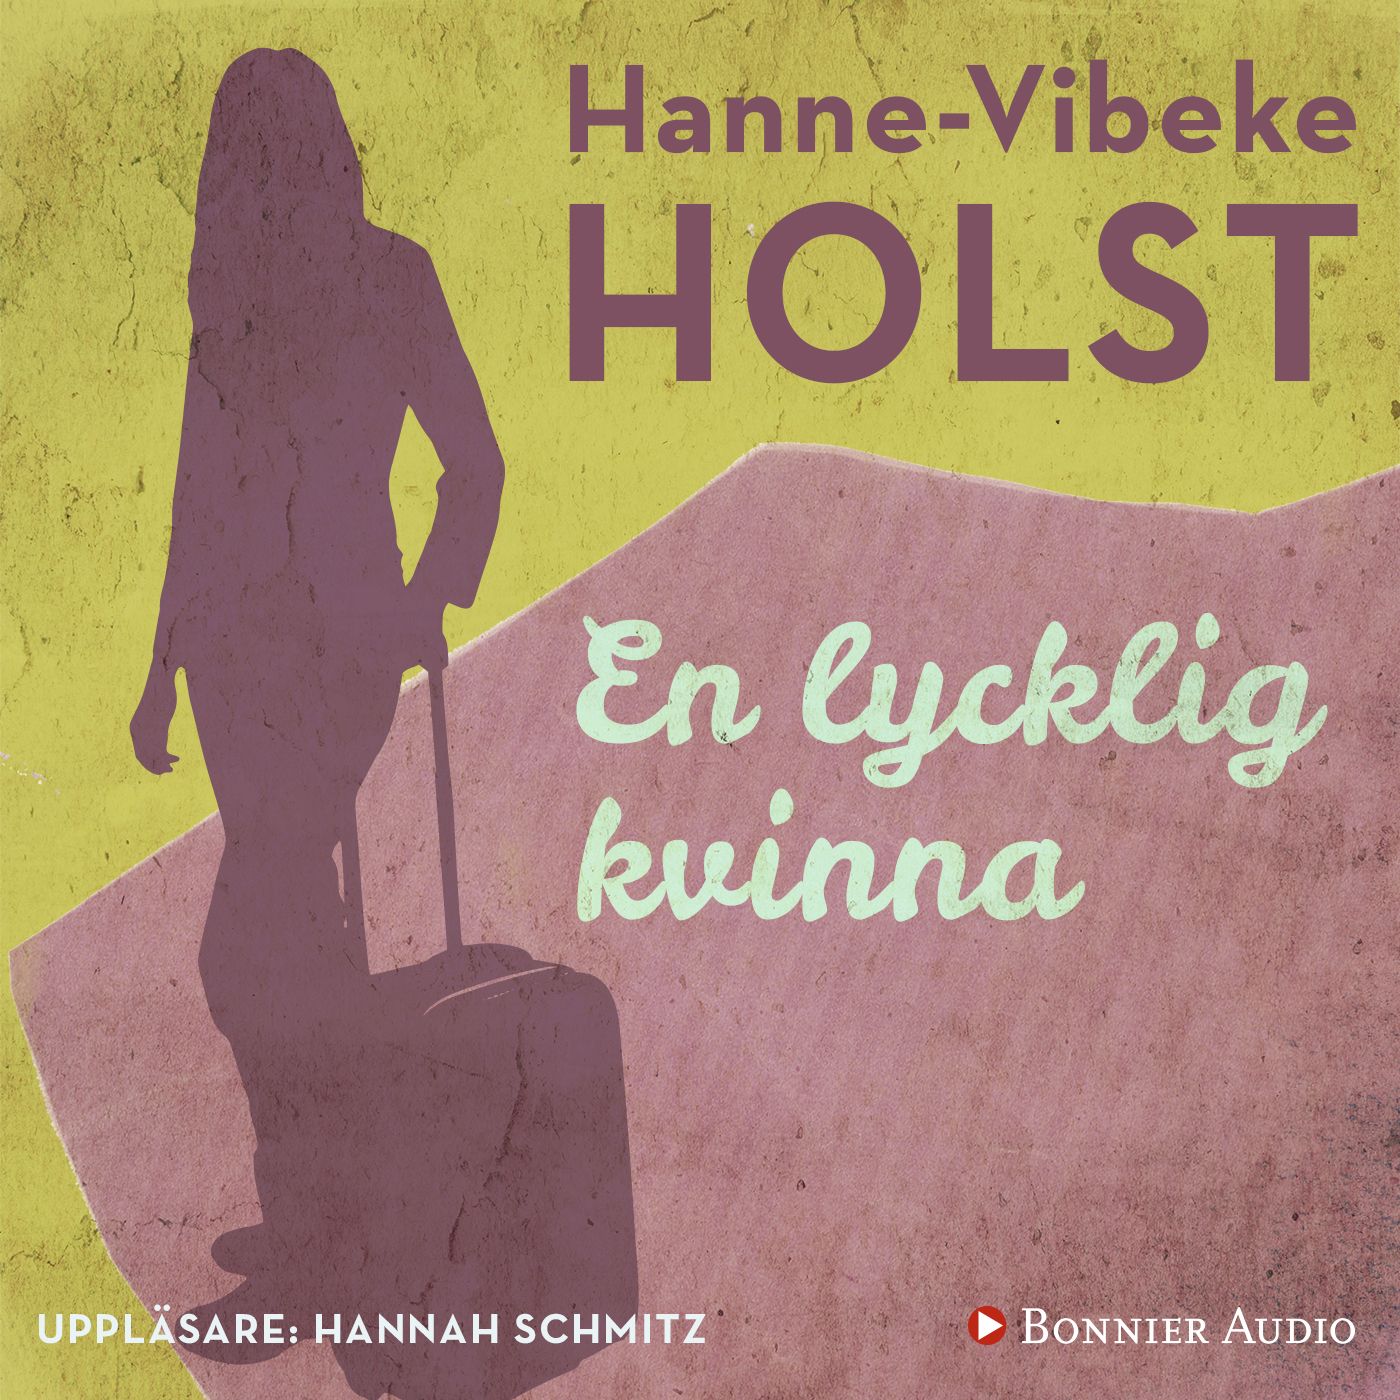 En lycklig kvinna, audiobook by Hanne-Vibeke Holst